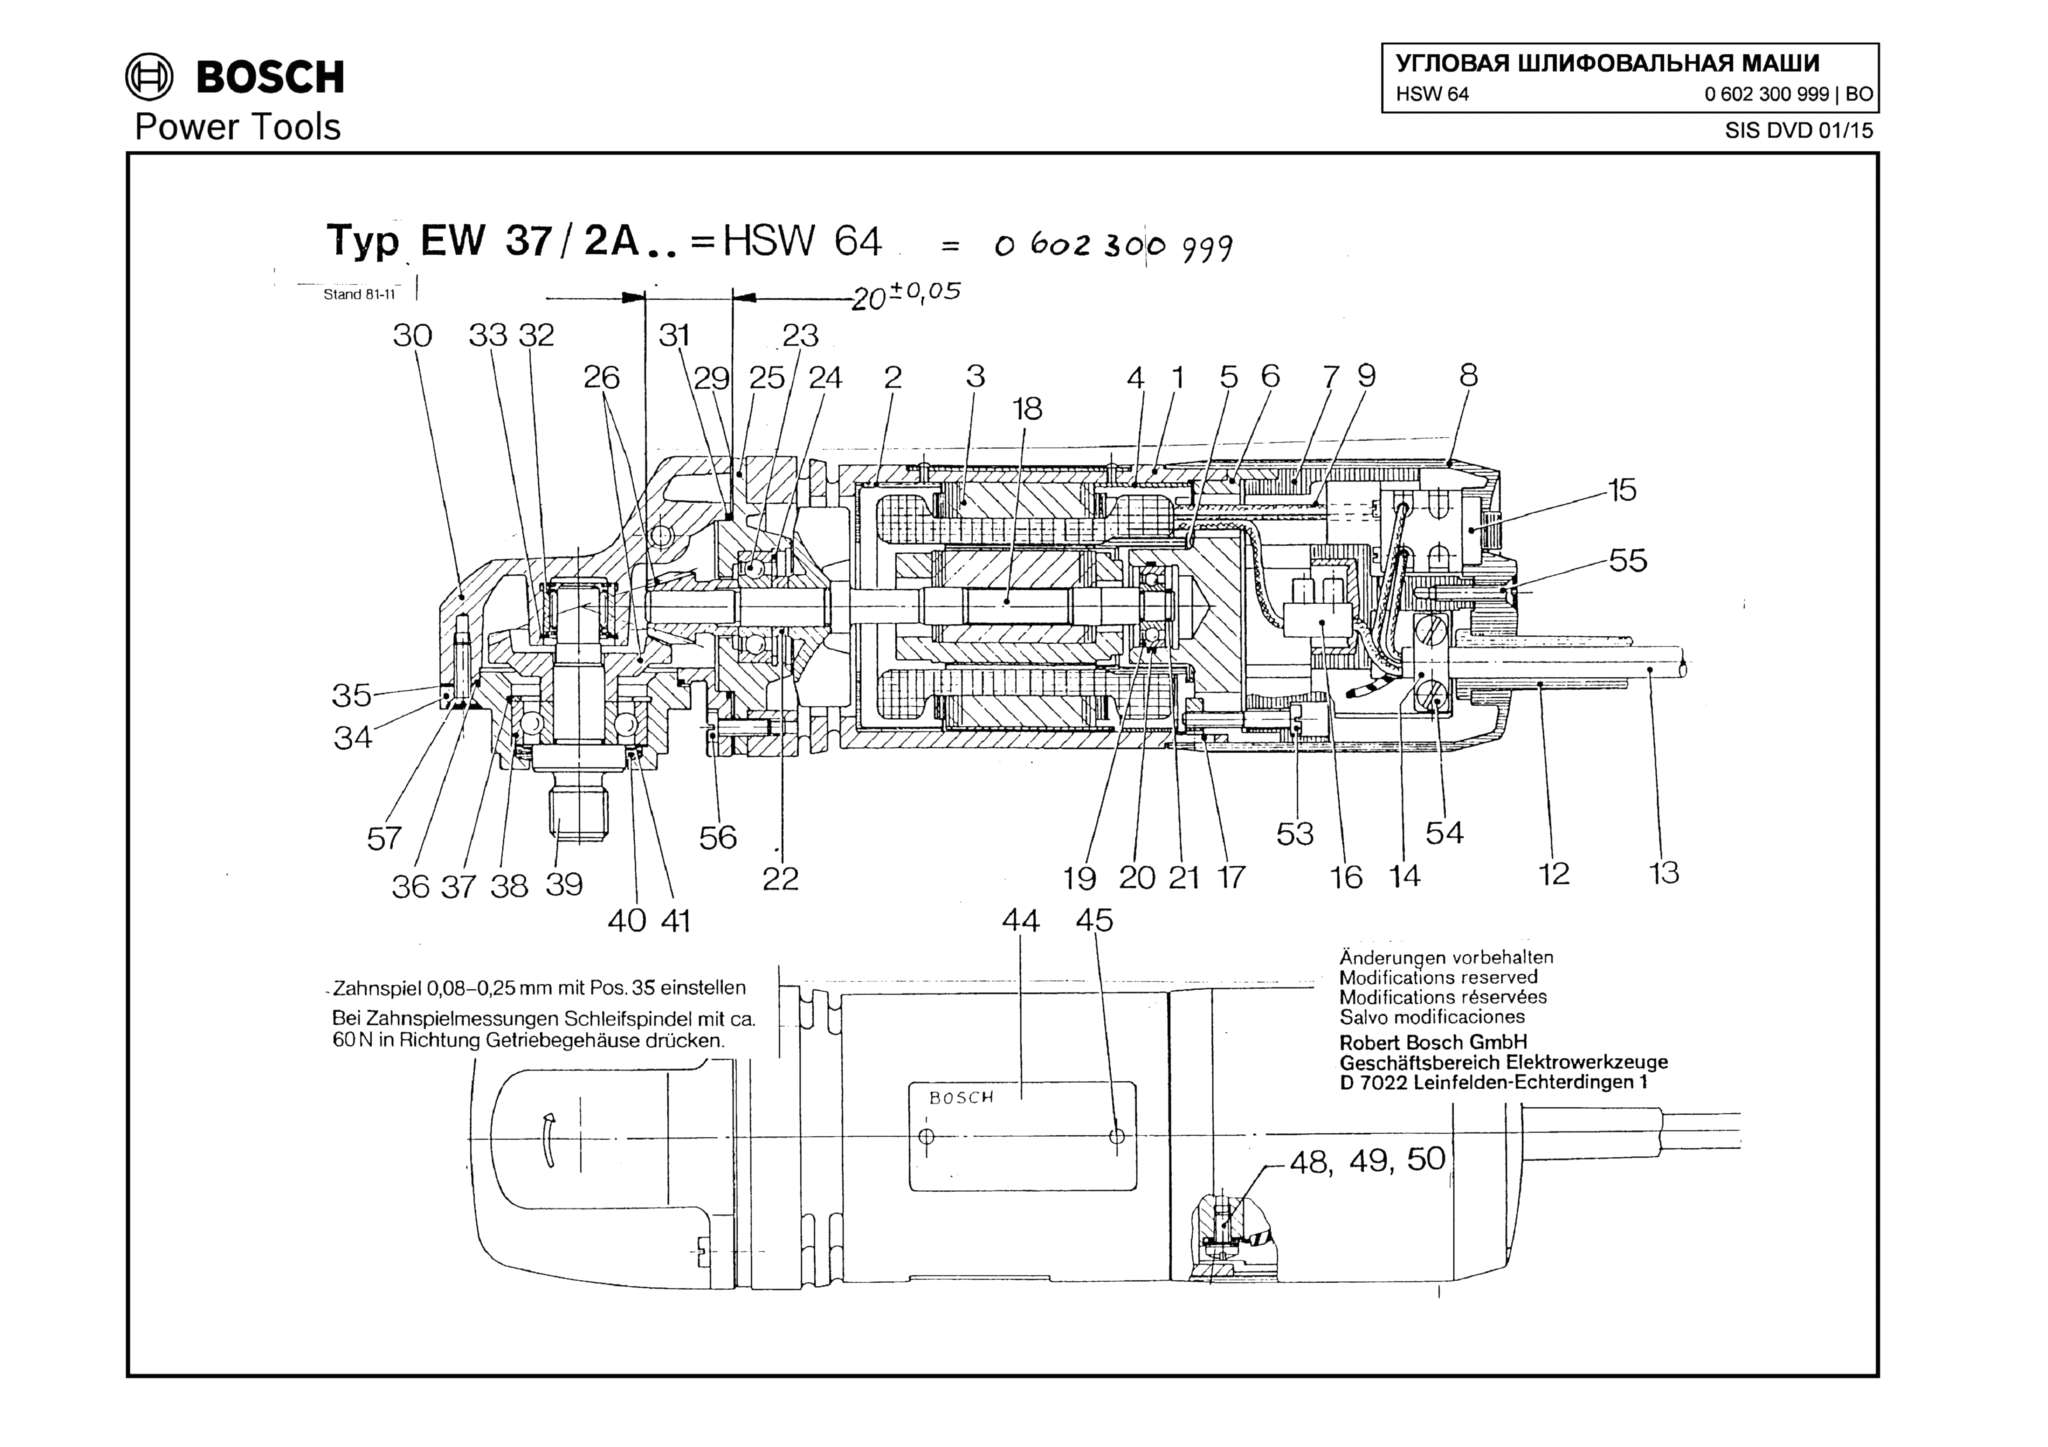 Запчасти, схема и деталировка Bosch HSW 64 (ТИП 0602300999)